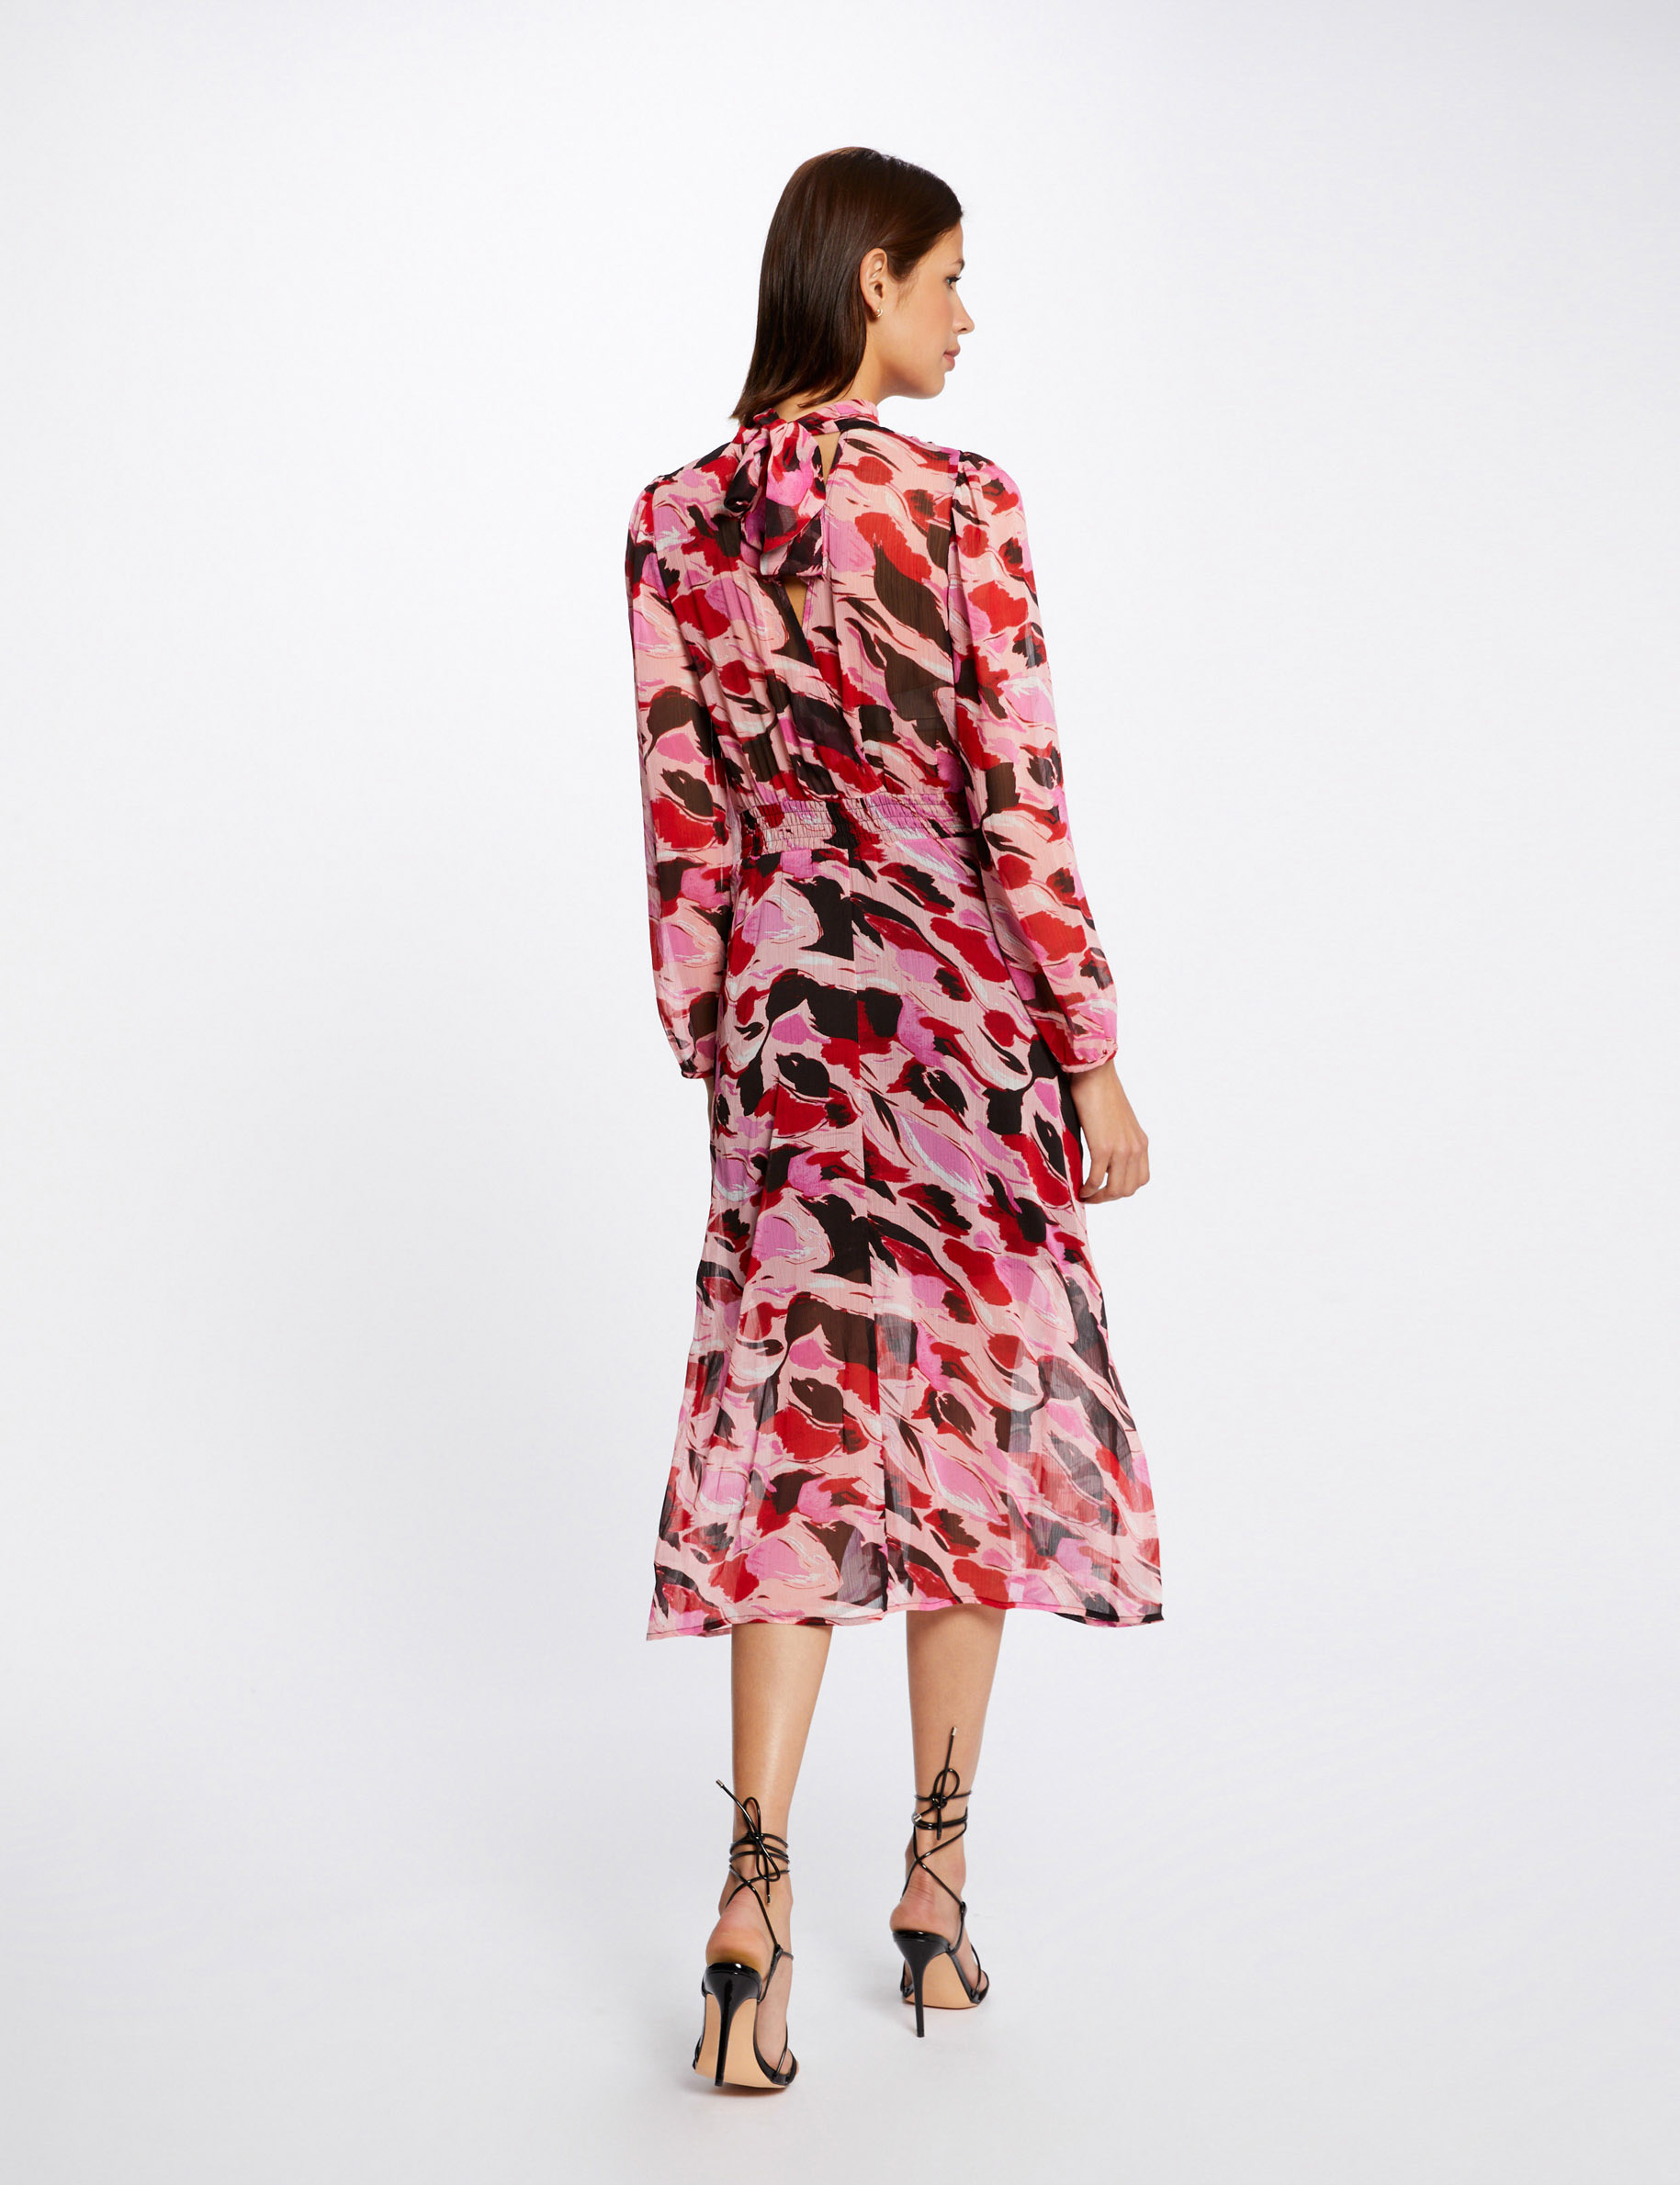 Rechte jurk met abstracte print meerkleurig vrouw